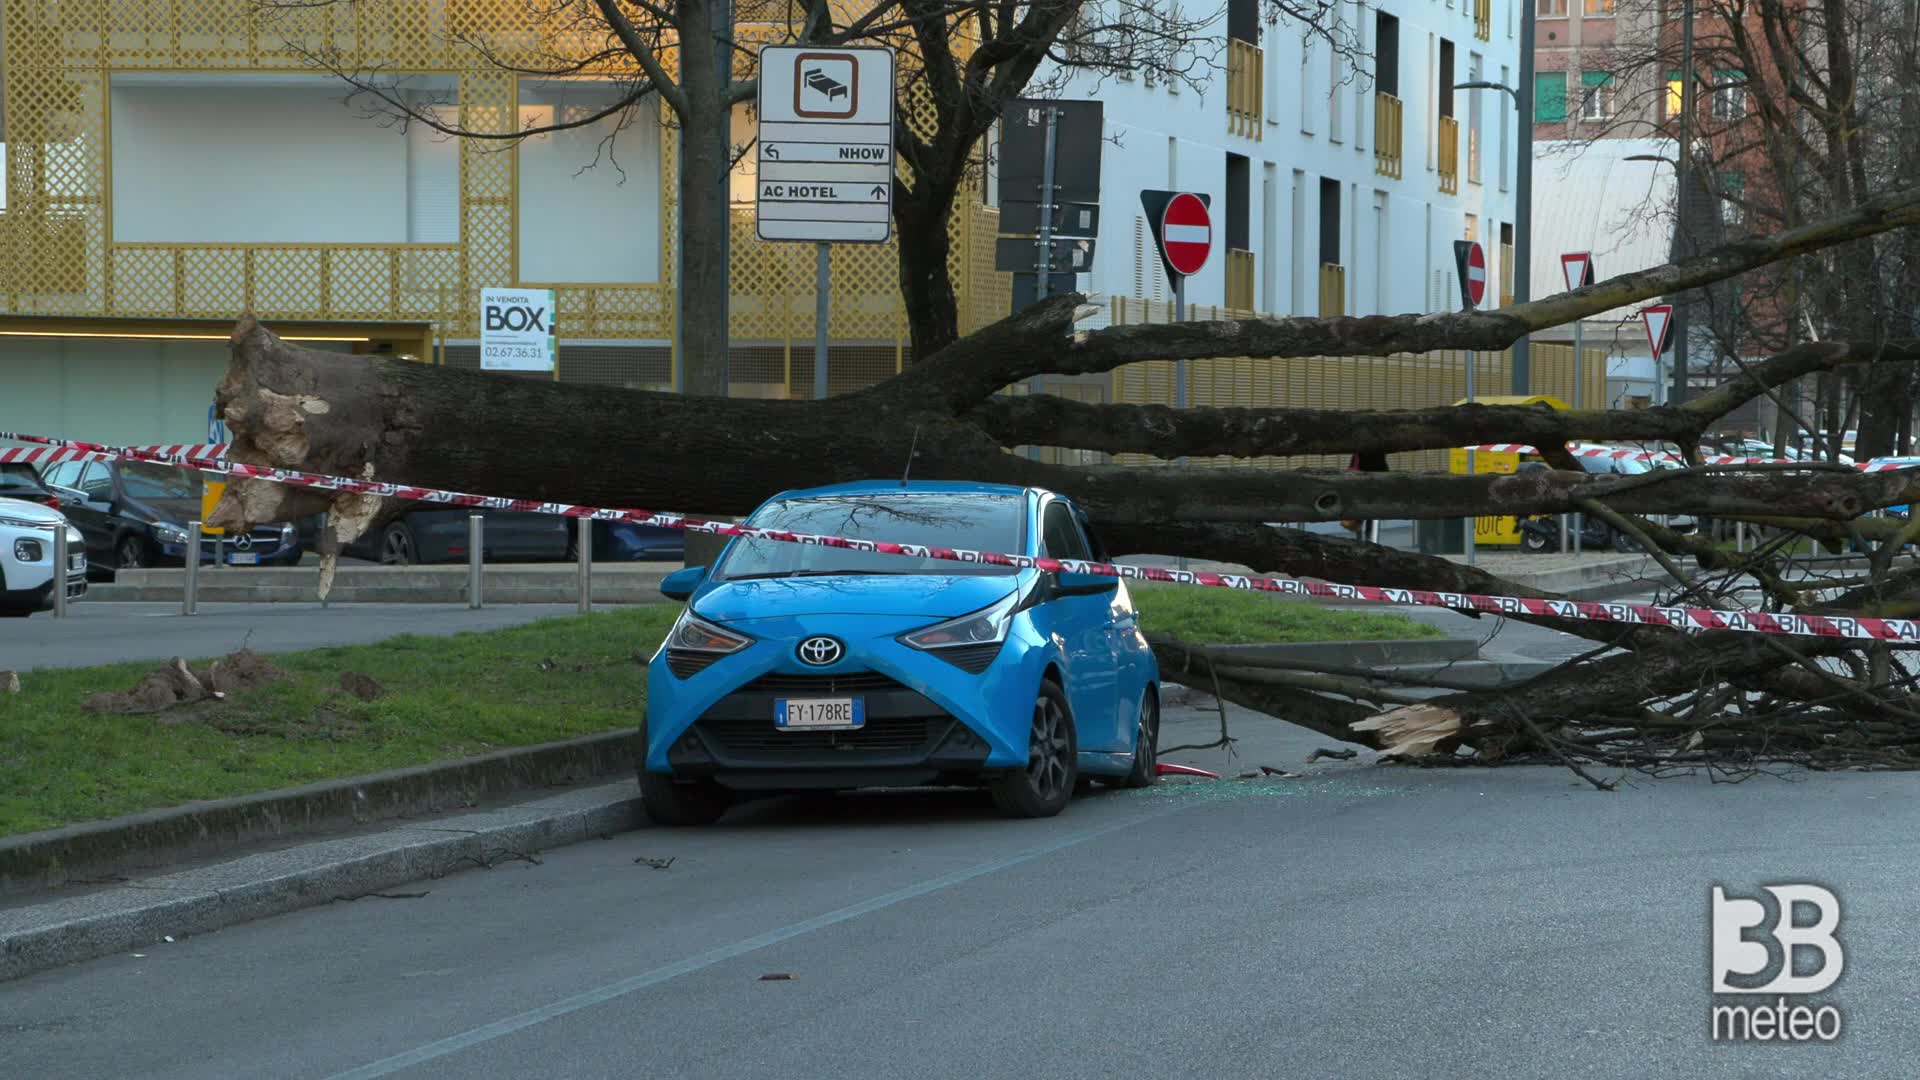 Milano, albero cade su auto: bloccata via Guglielmo Silva